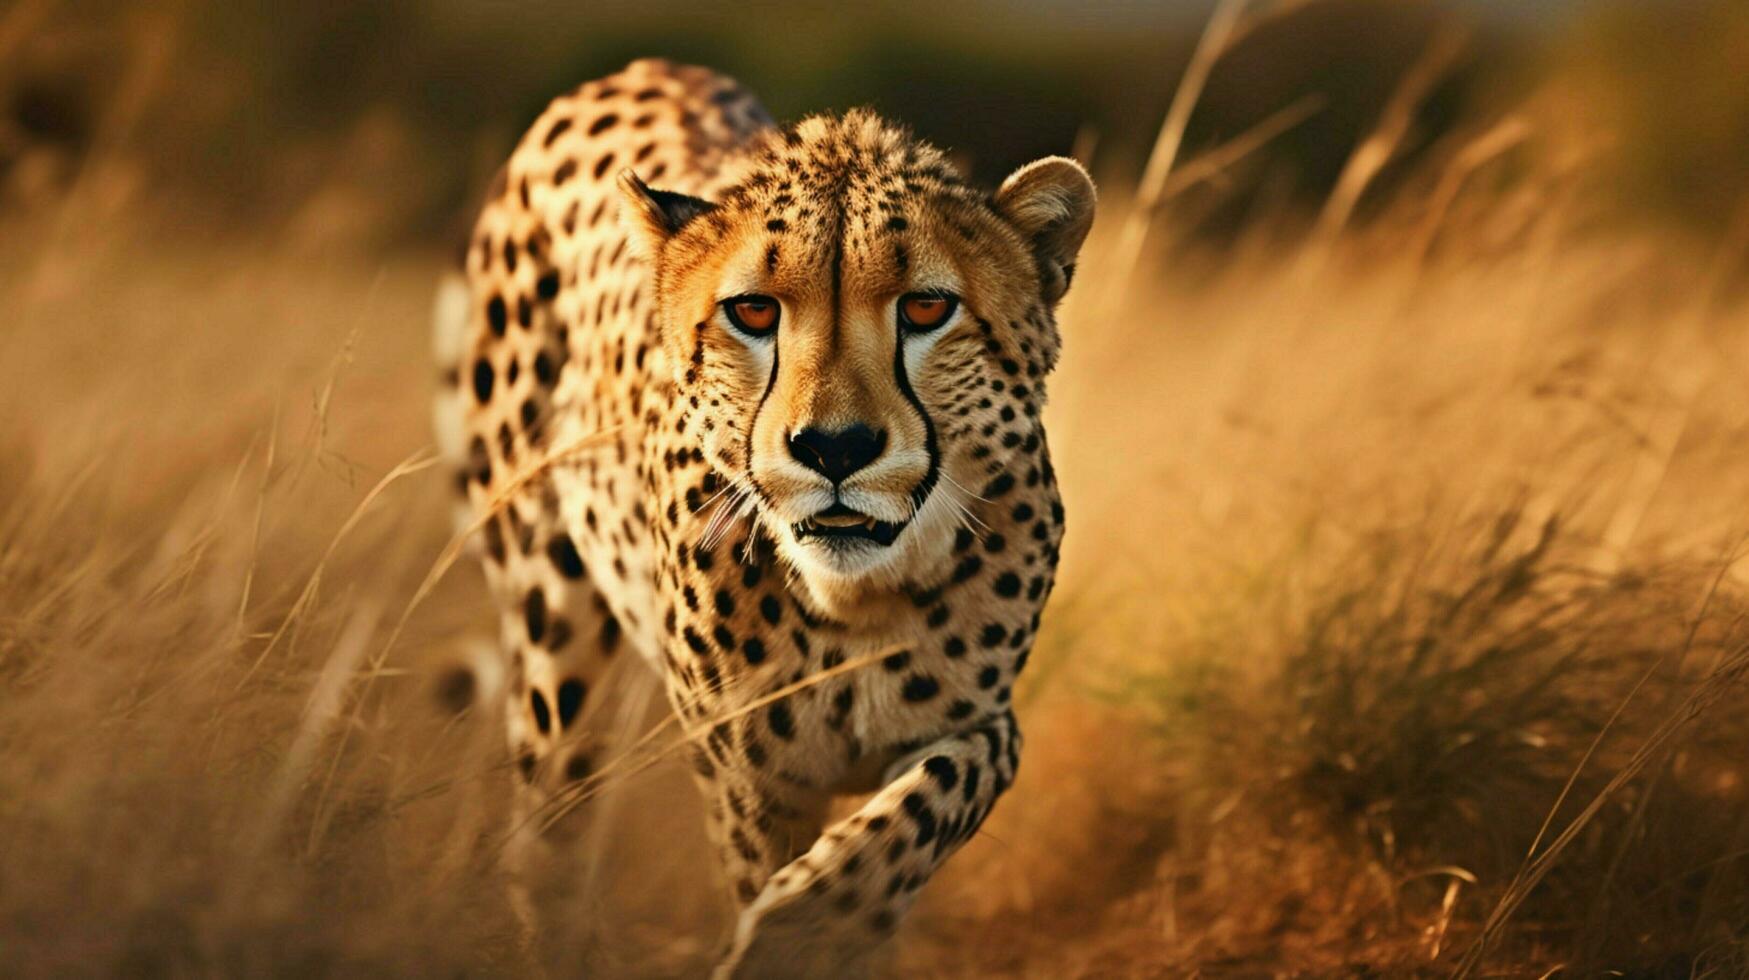 guepardo perseguição às campo foto